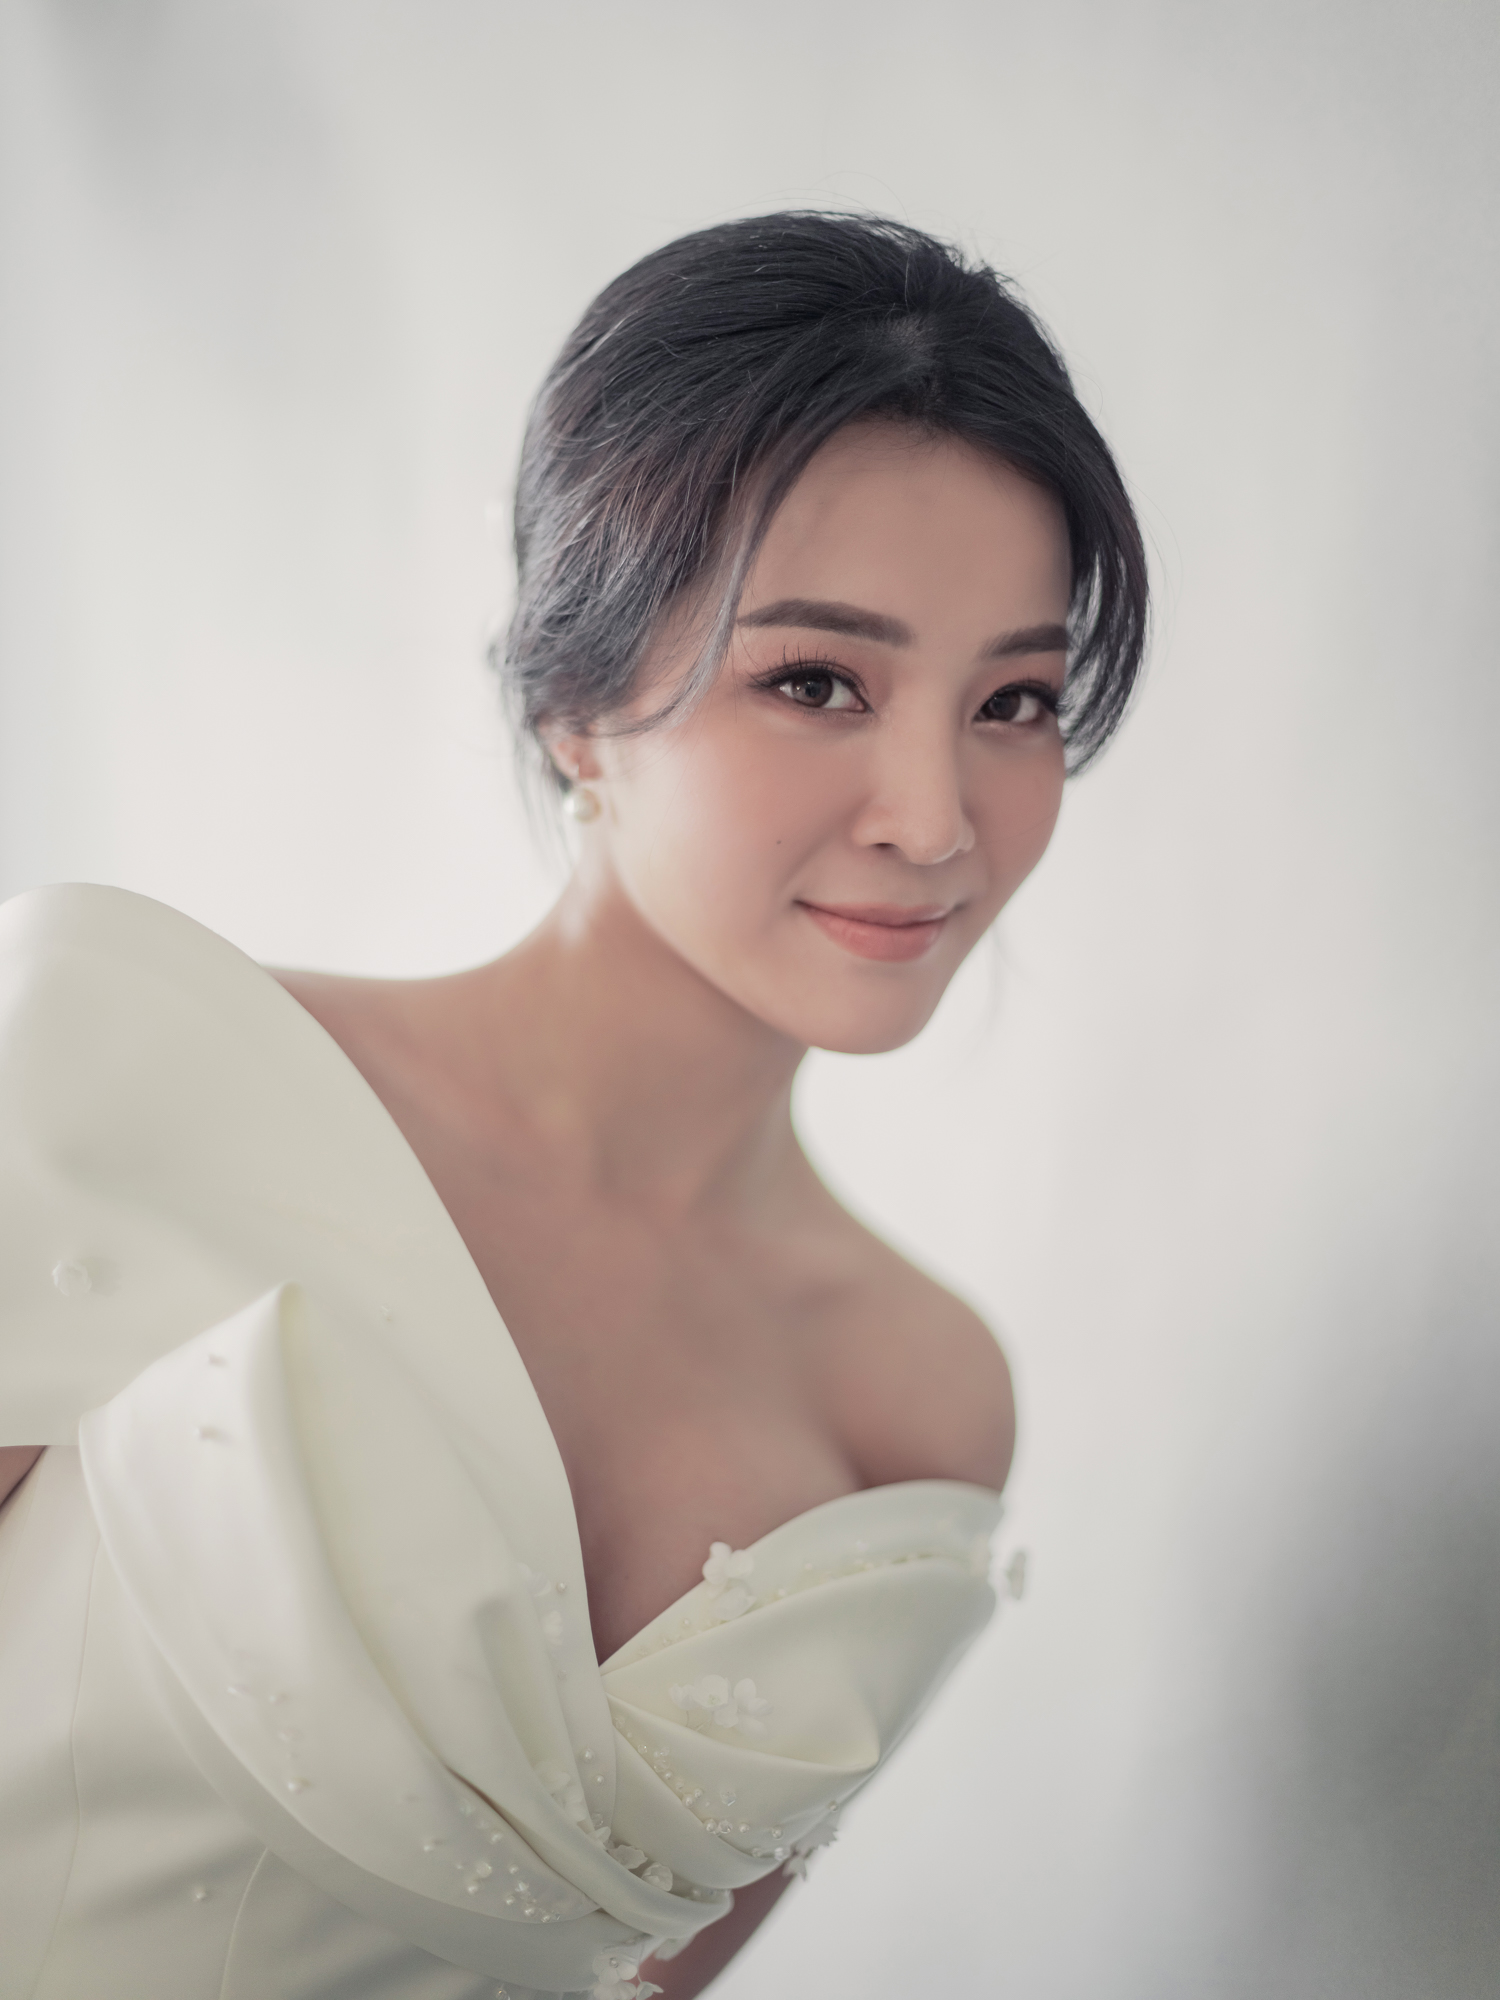 Hé lộ bộ ảnh cưới của Karen Nguyễn cùng ông xã: Áo cưới được đính kết hơn 1000 viên pha lê - ảnh 5